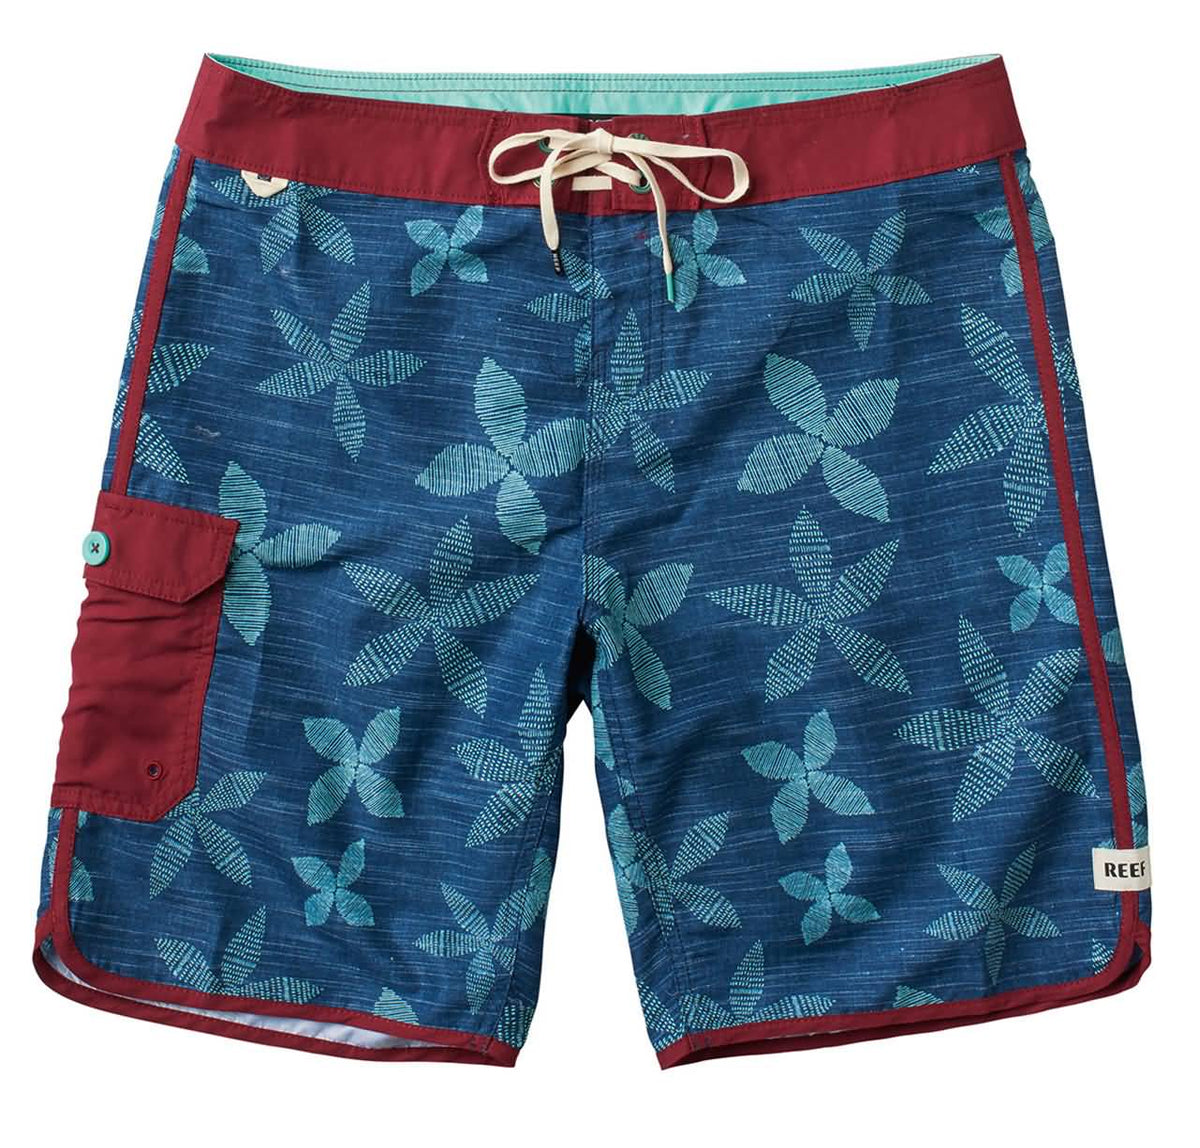 Reef Revolution Men's Boardshort Shorts 